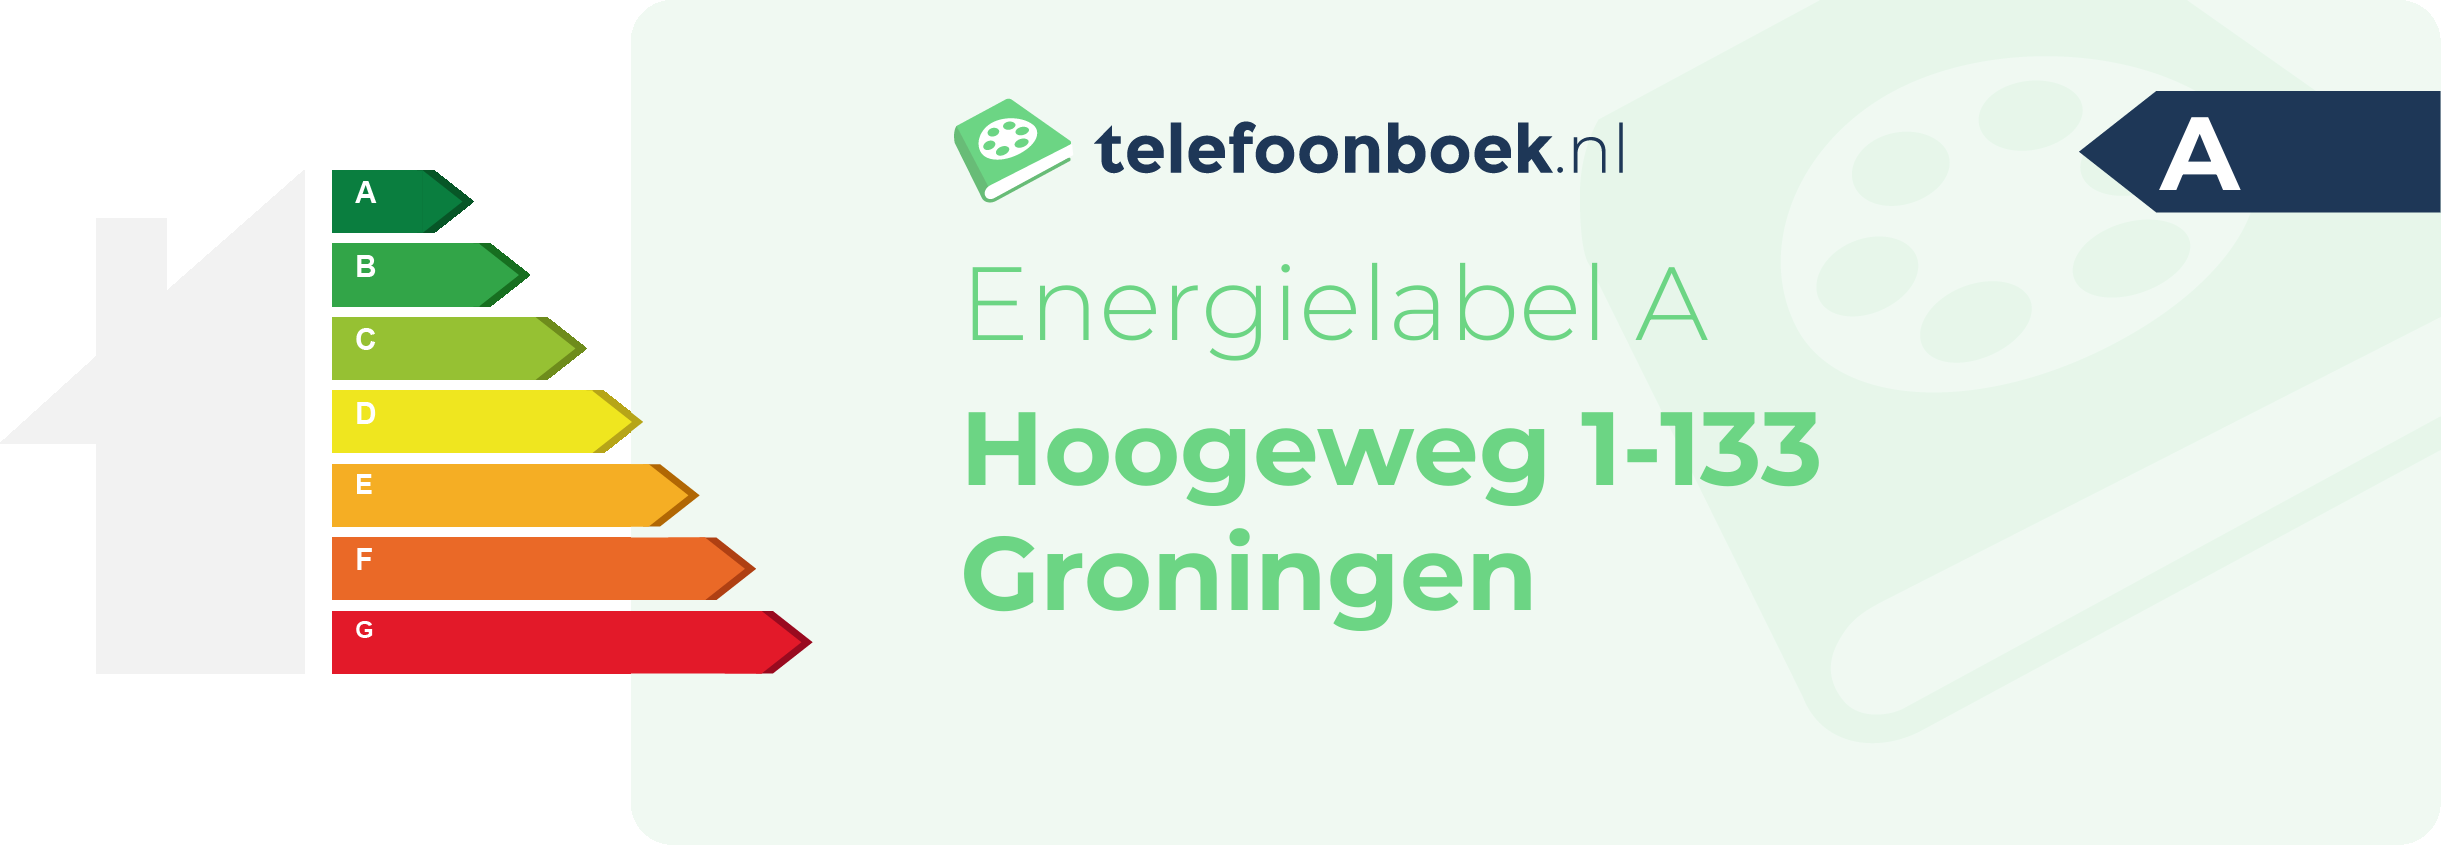 Energielabel Hoogeweg 1-133 Groningen